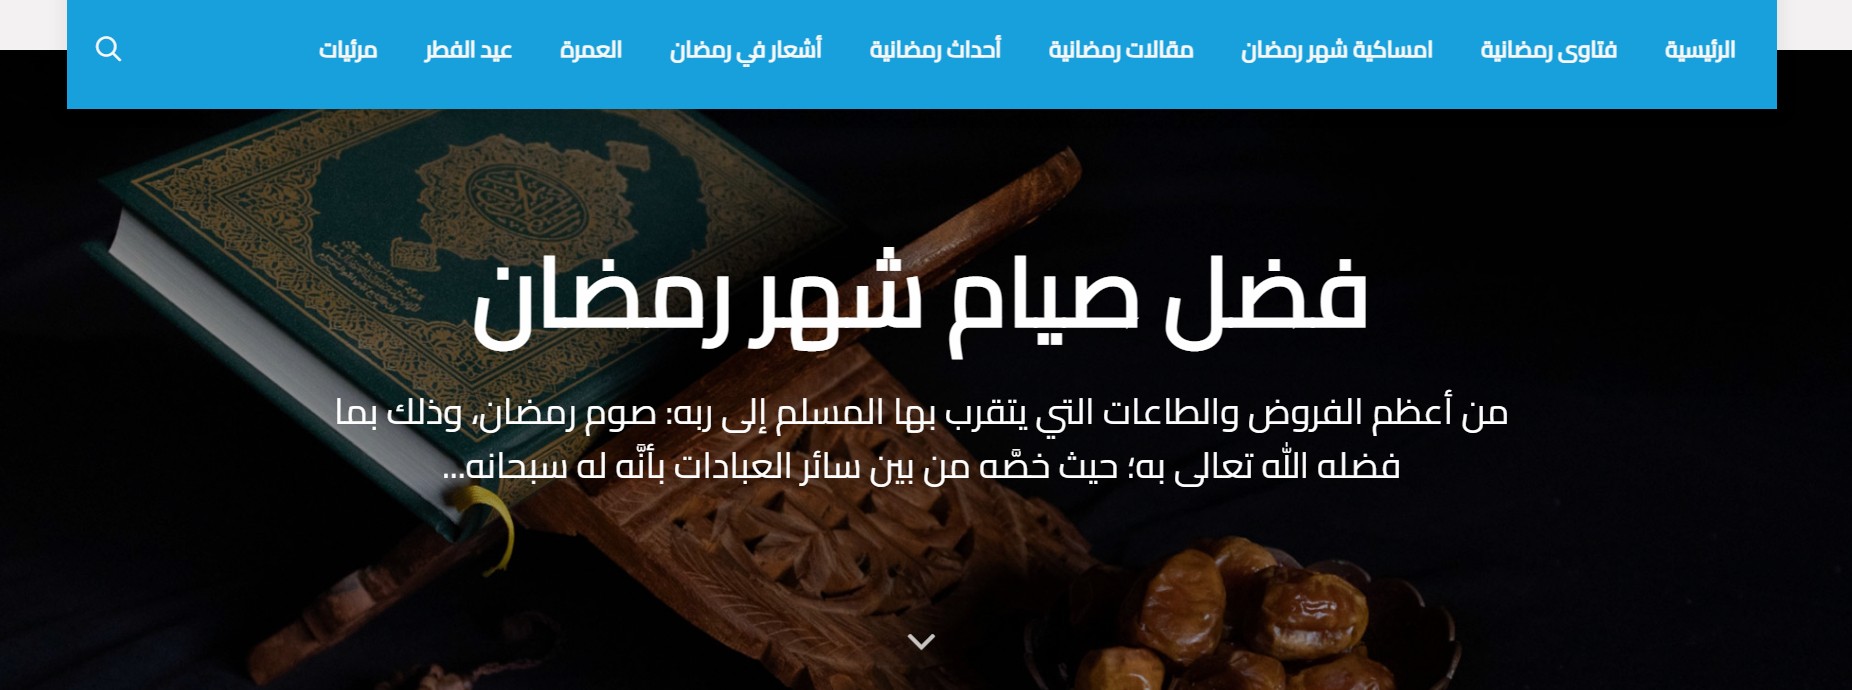 صفحة رمضان على موقع دار الإفتاء المصرية